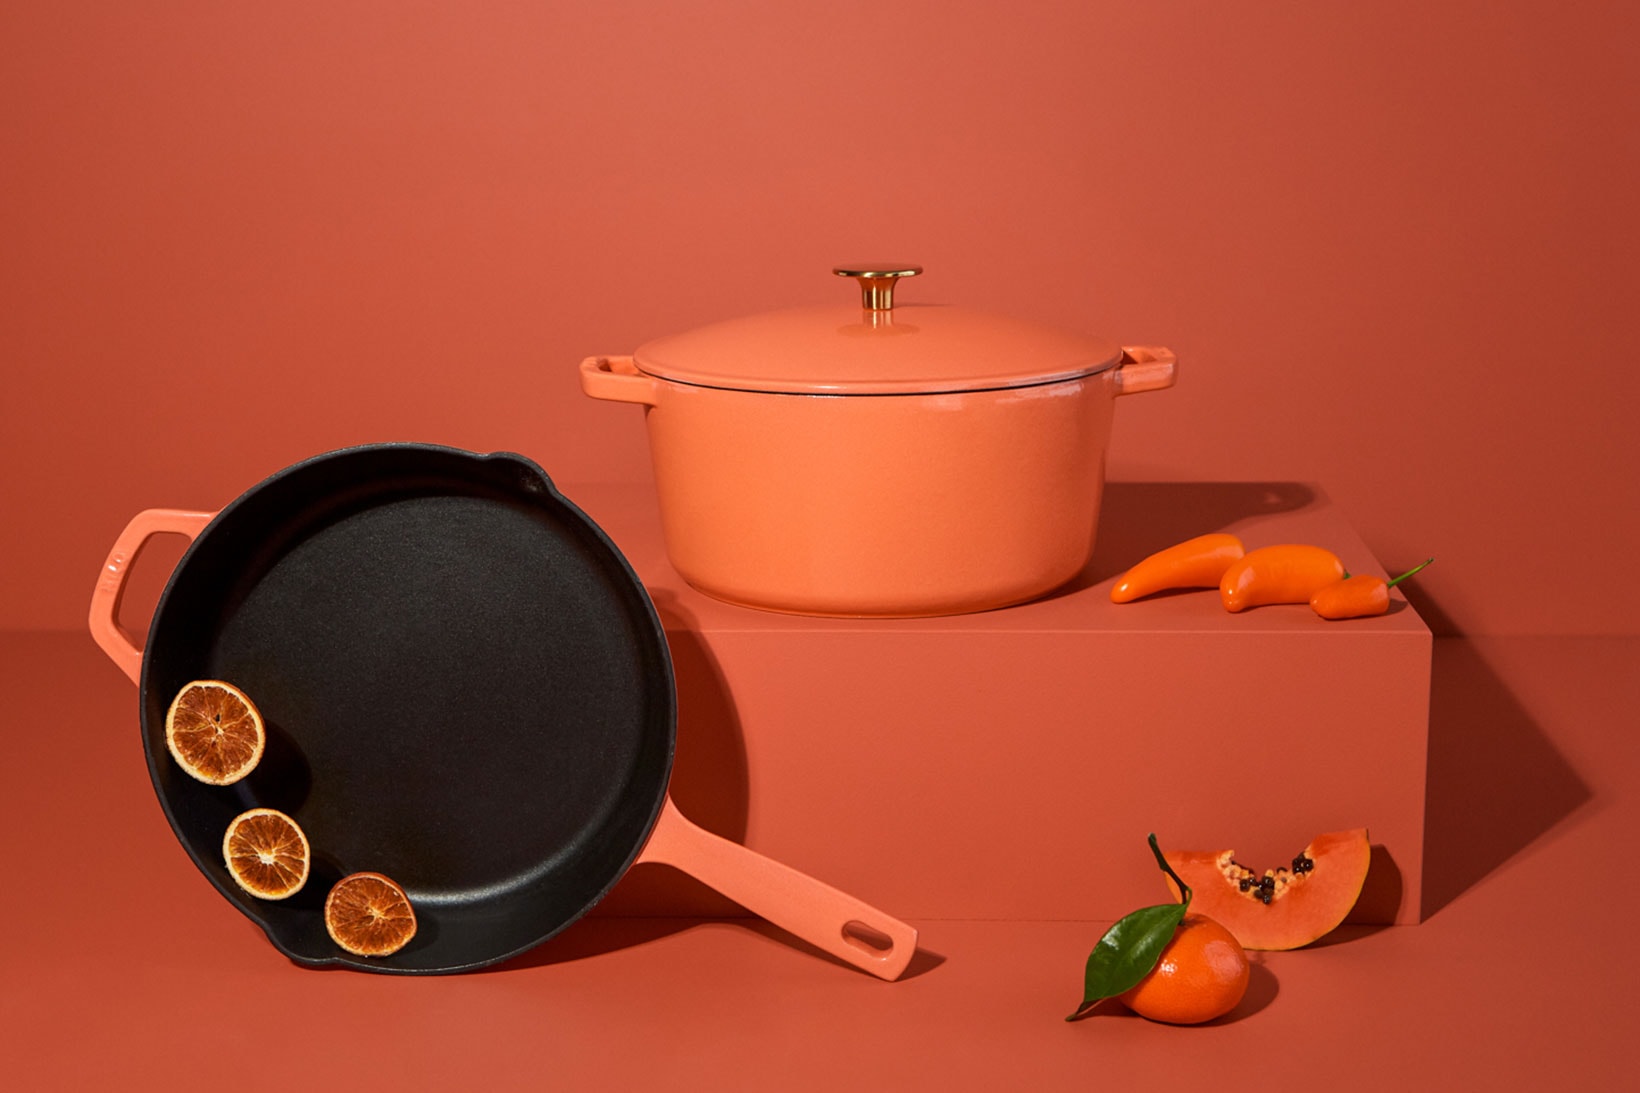 milo cookware kitchen cast iron pants pots new colorways red orange